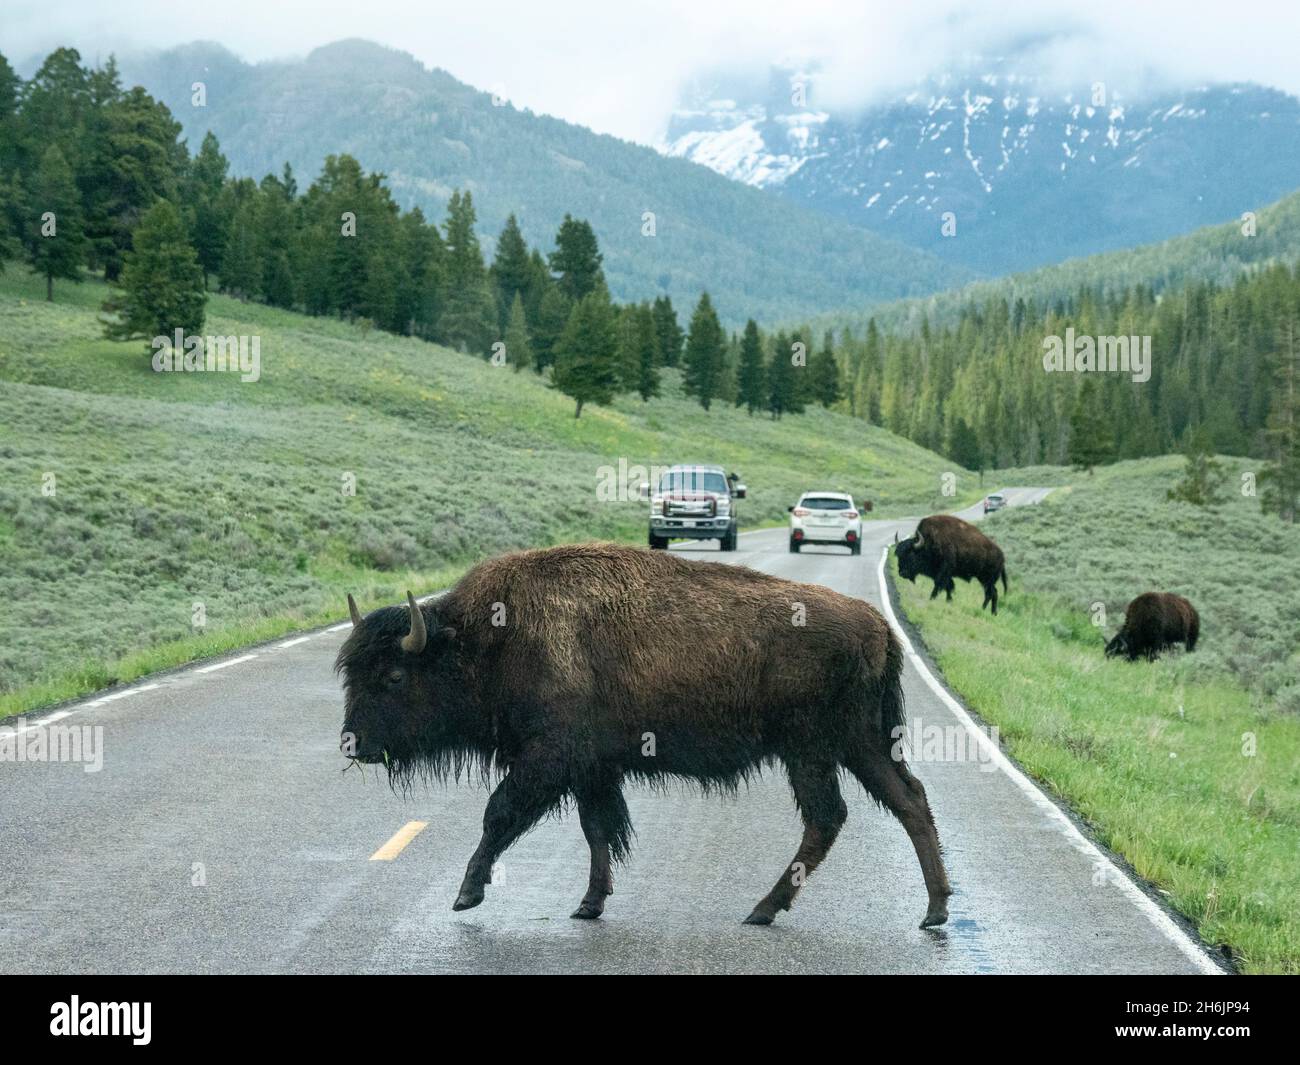 Bisonte adulto (bisonte) che attraversa l'autostrada nel parco nazionale di Yellowstone, sito patrimonio dell'umanità dell'UNESCO, Wyoming, Stati Uniti d'America Foto Stock